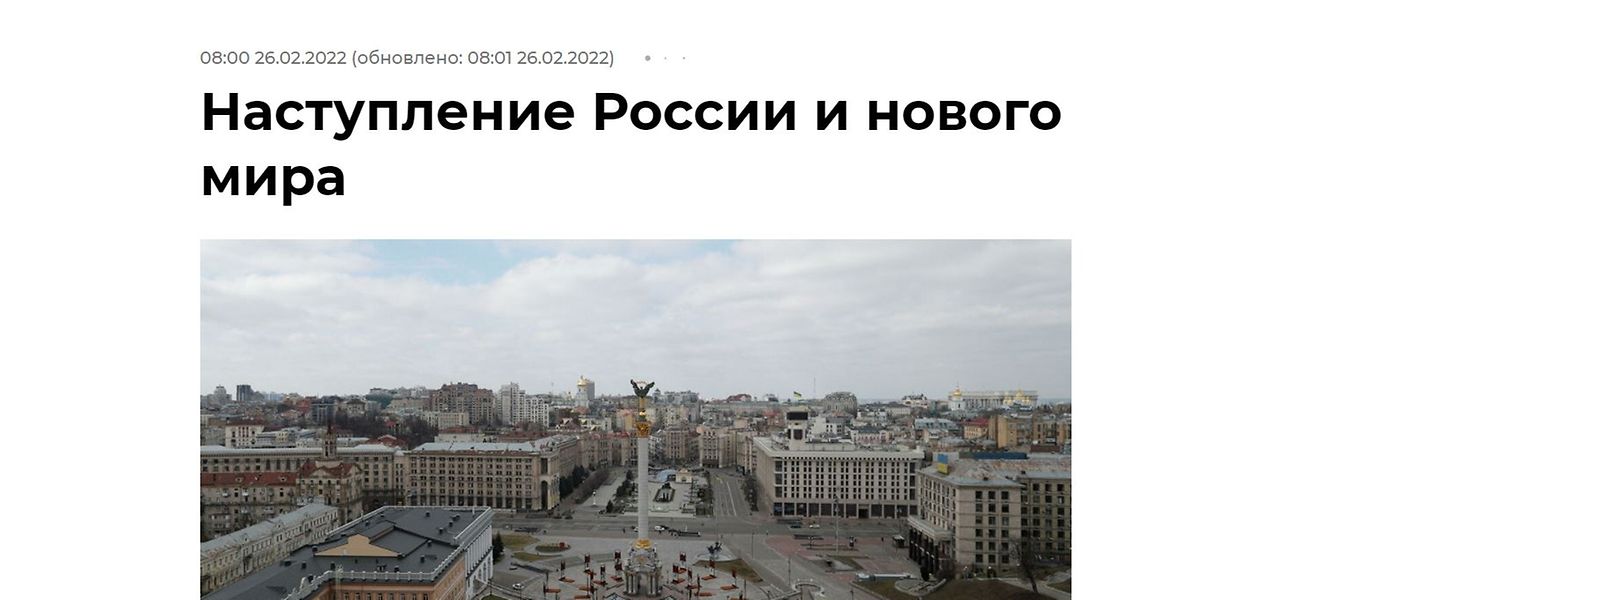 Der Artikel „Russlands Angriff und die neue Welt“ ist bebildert mit dem Majdan in Kiew - der sich auch zwei Tage nach der Veröffentlichung nicht in russischer Hand befindet.